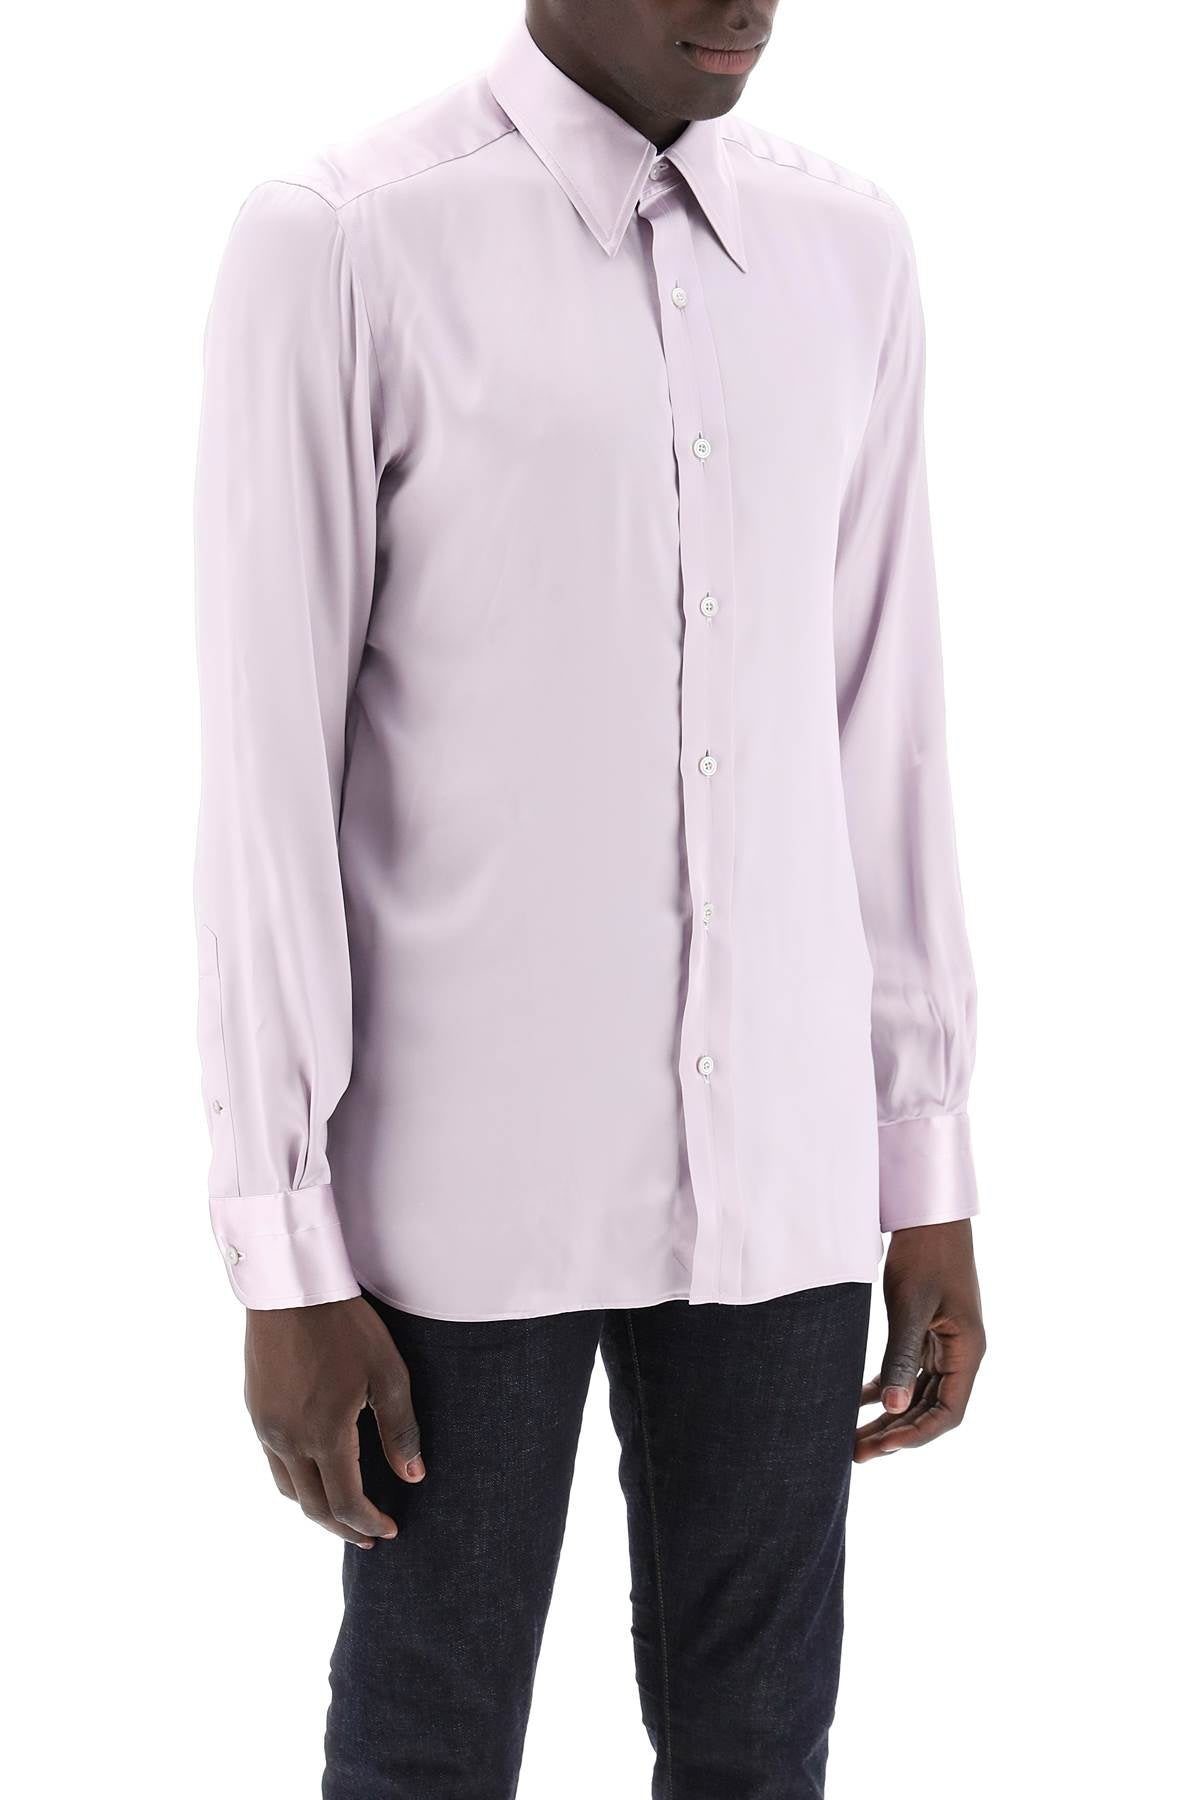 男士絲緞襯衫-粉紅色絲質鈕扣款式，搭配義大利領扣和圓形下擺